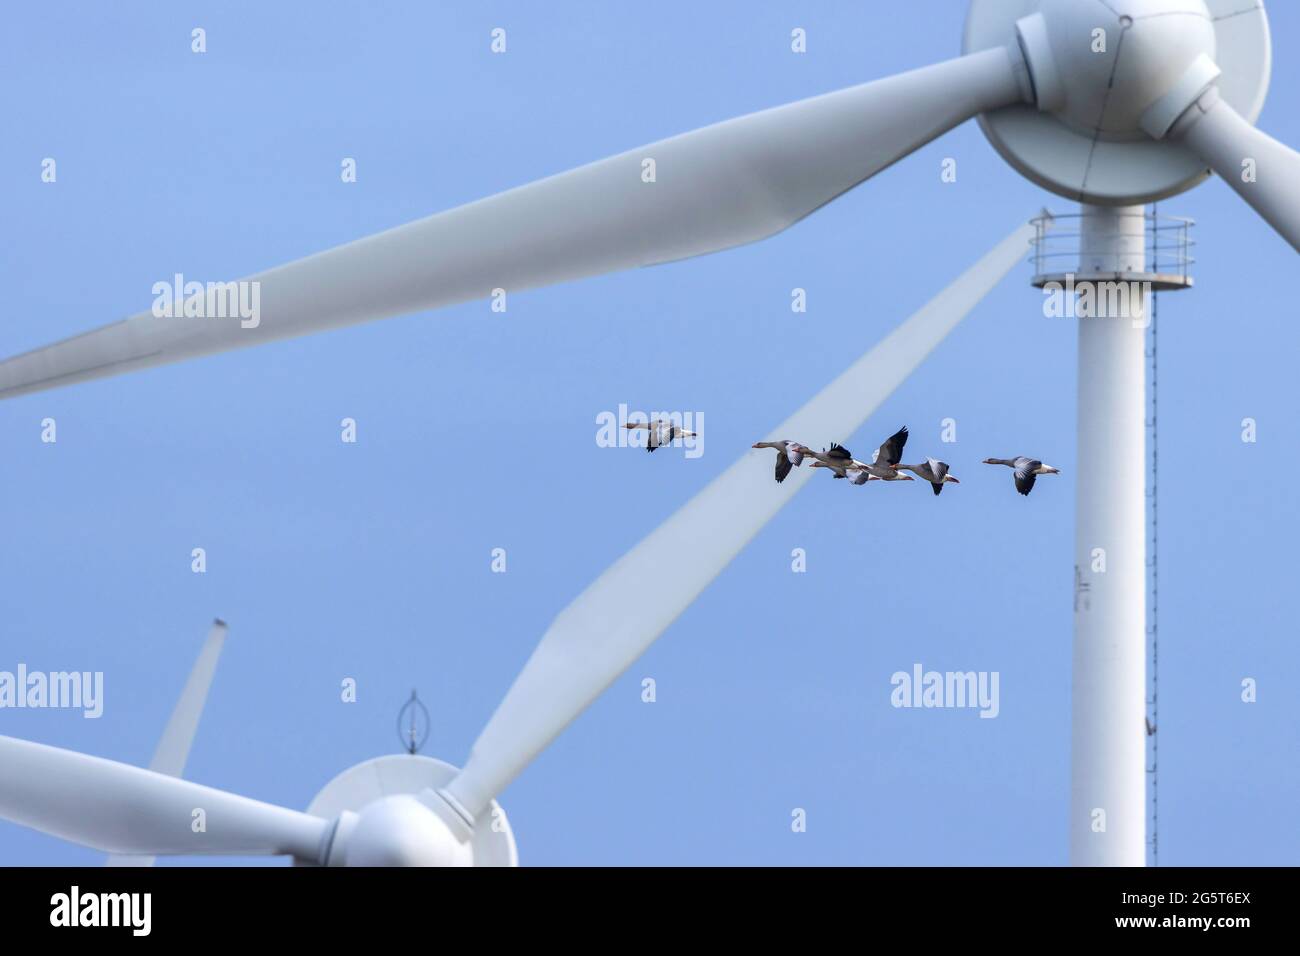 Ganso graylag (Anser anser), ganso graylag volando delante de ruedas de viento, Alemania, Mecklemburgo-Pomerania Occidental Foto de stock